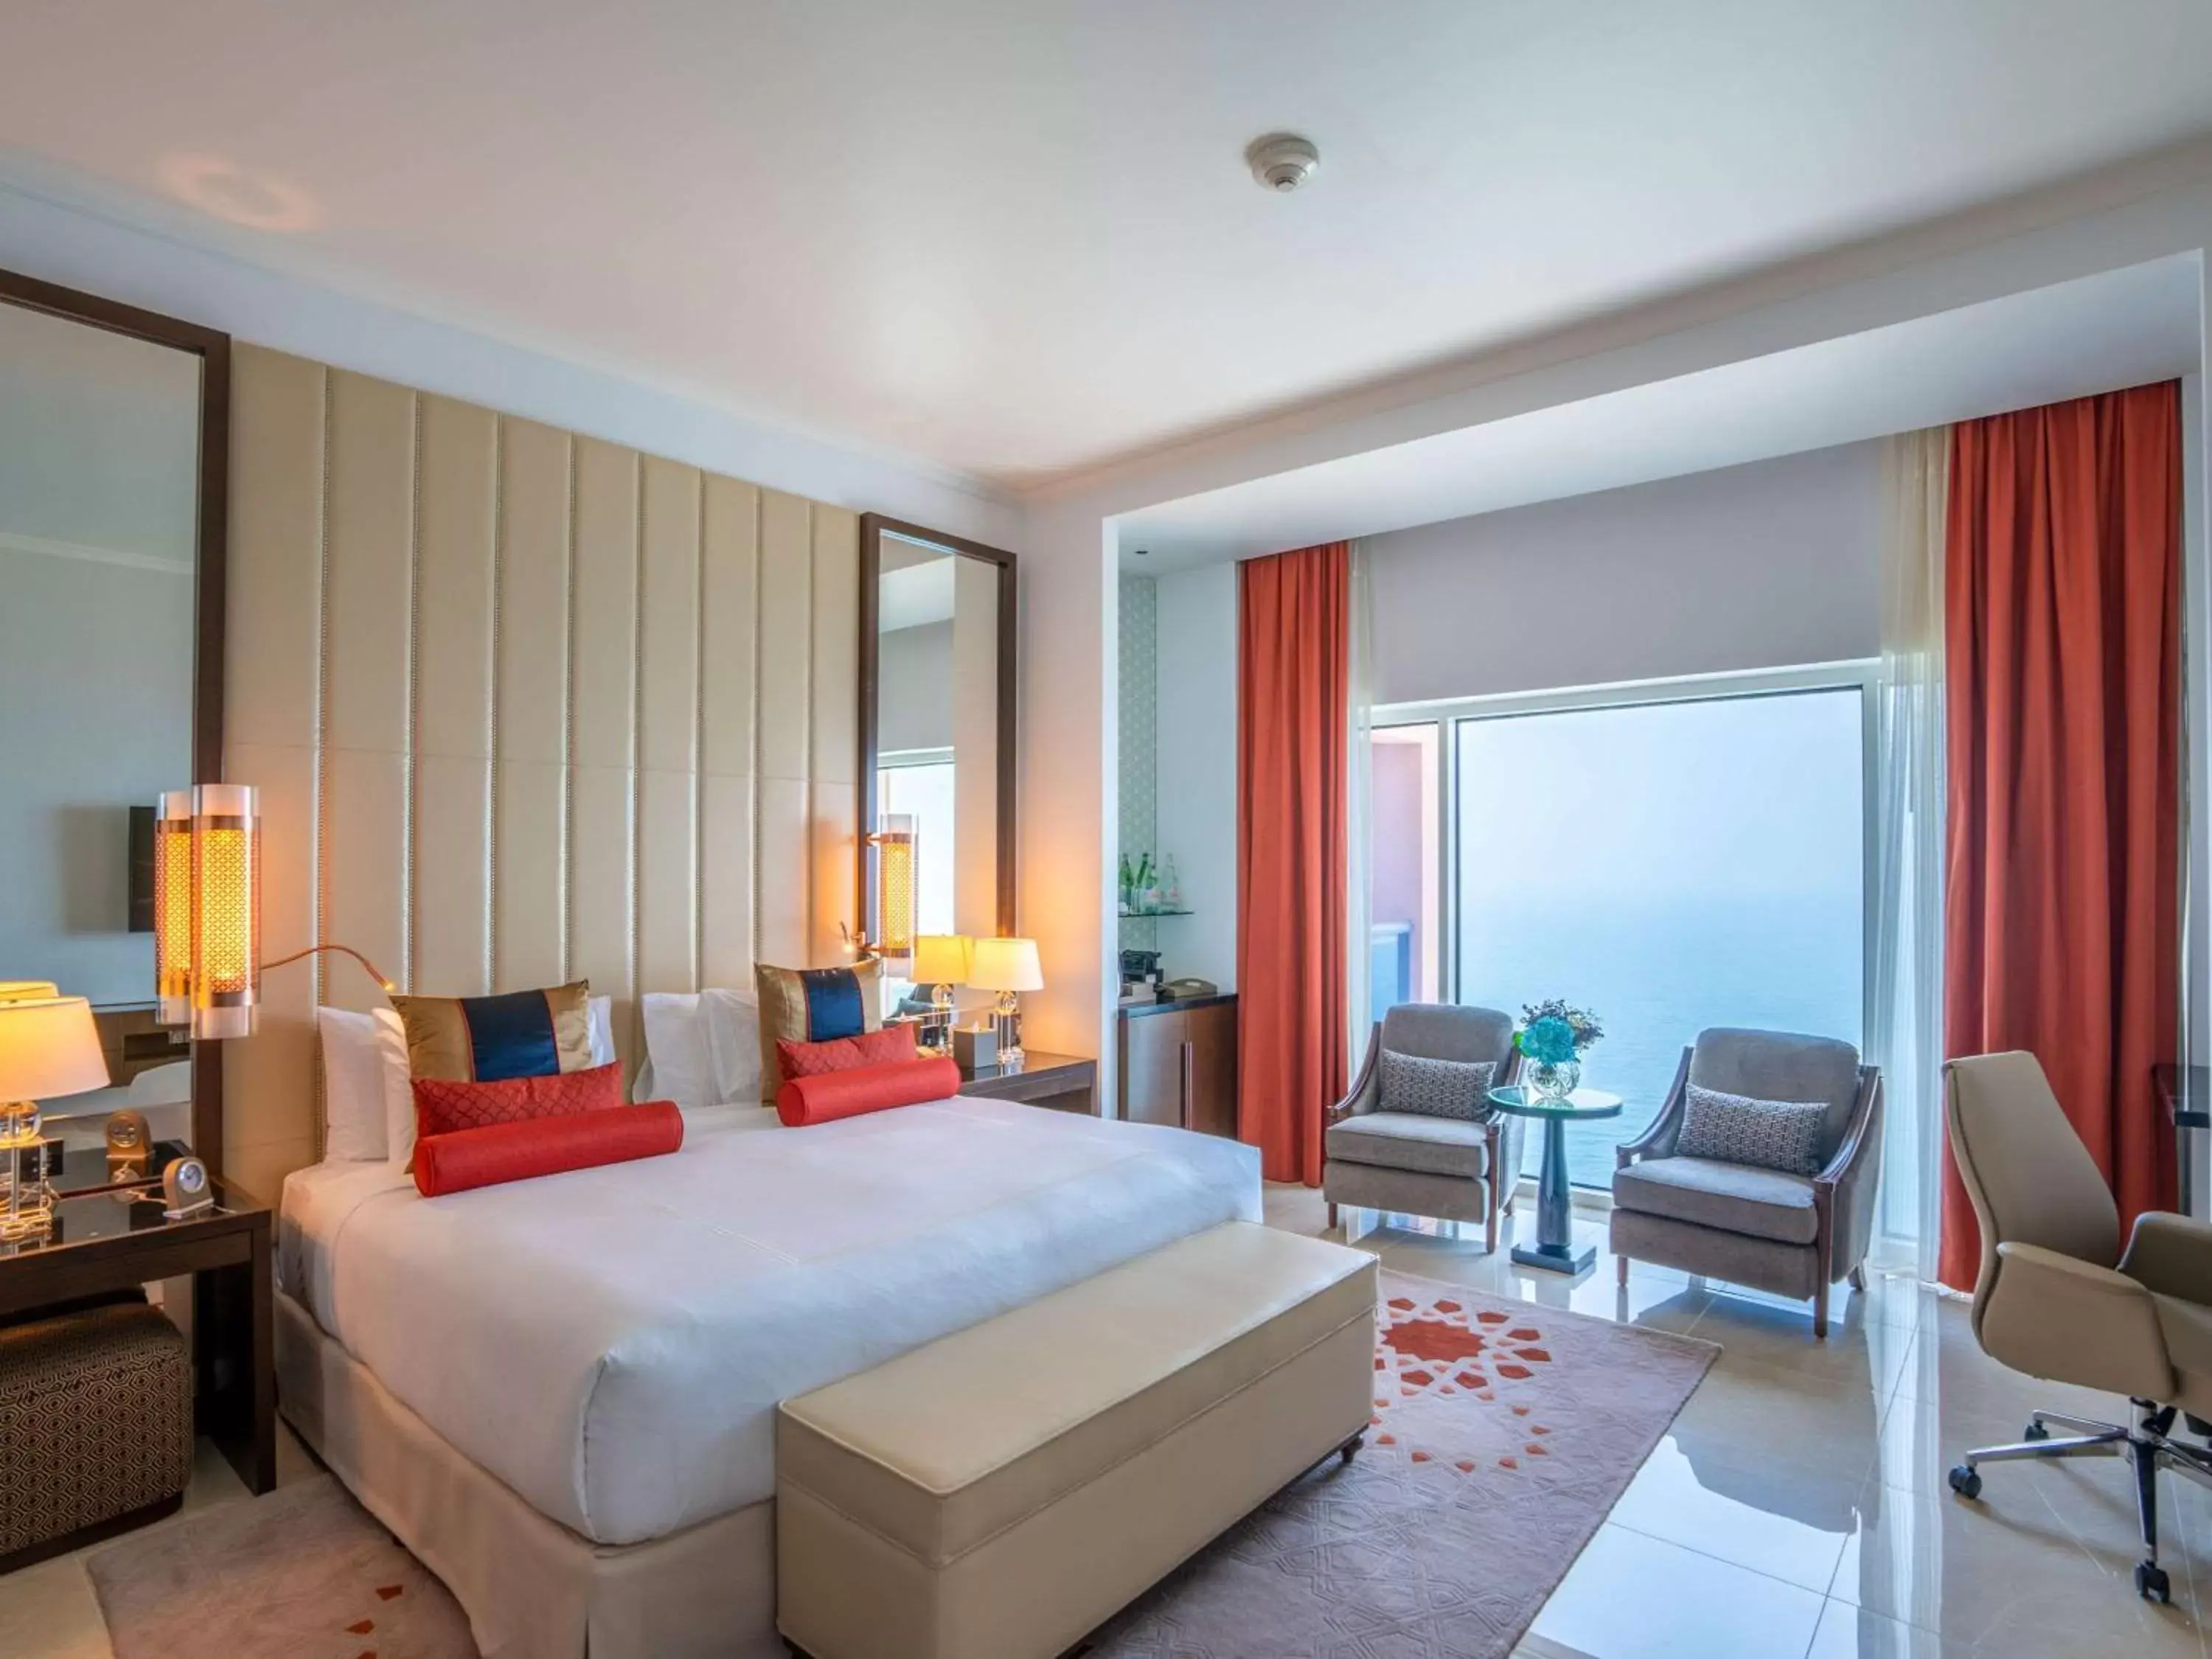 Bedroom in Rixos Marina Abu Dhabi